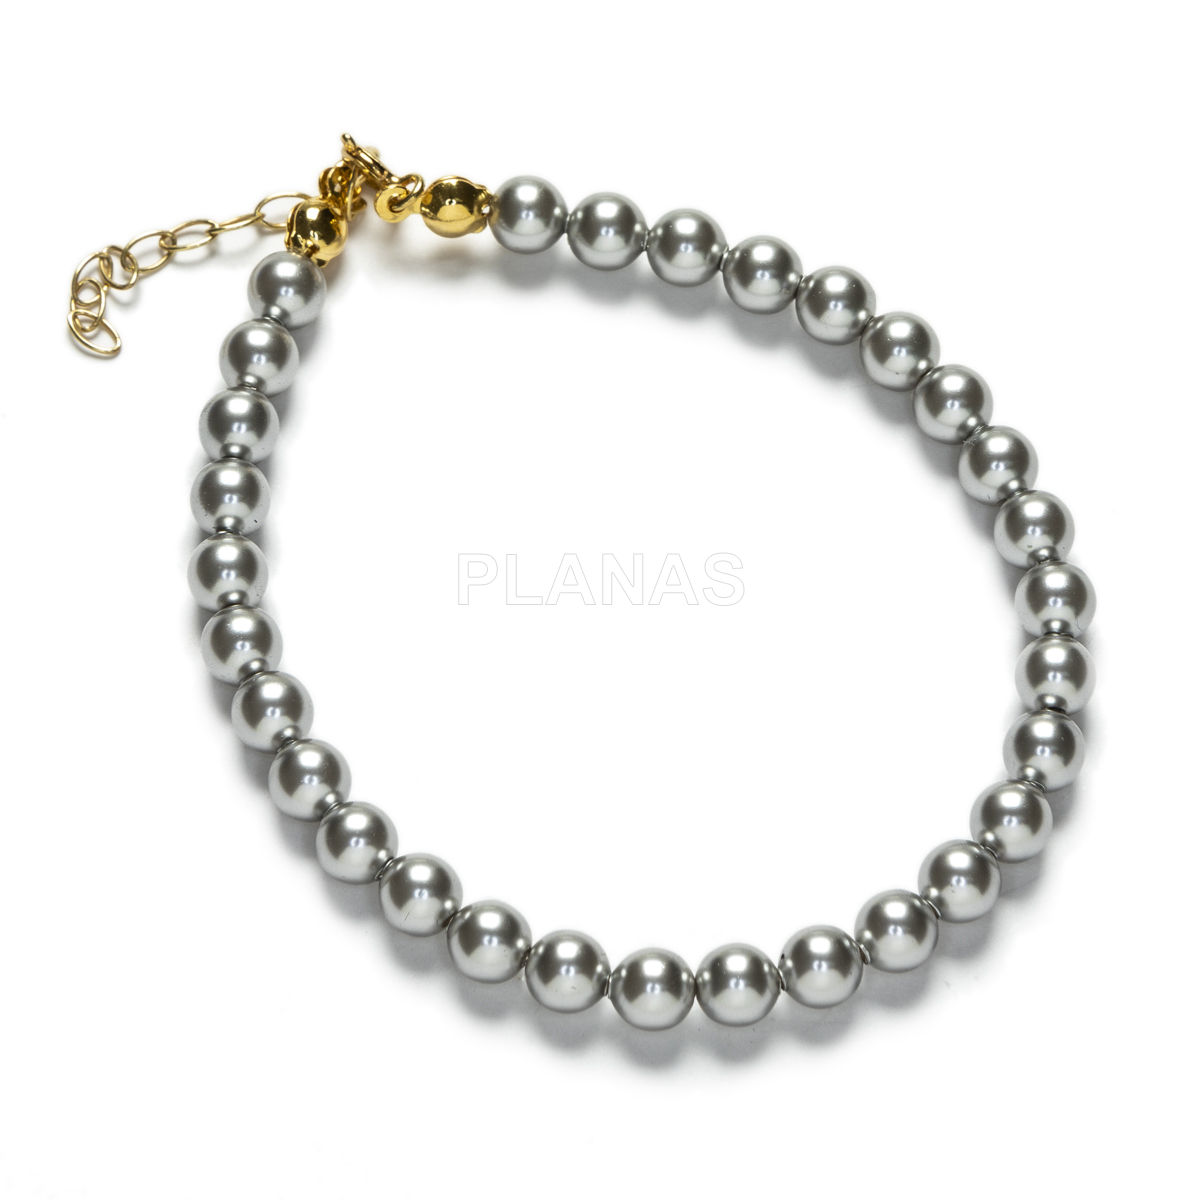 Conjunto de Collar y Pulsera en Plata de ley y Baño Oro Perlas de primera calidad en 5mm. Color Gris.